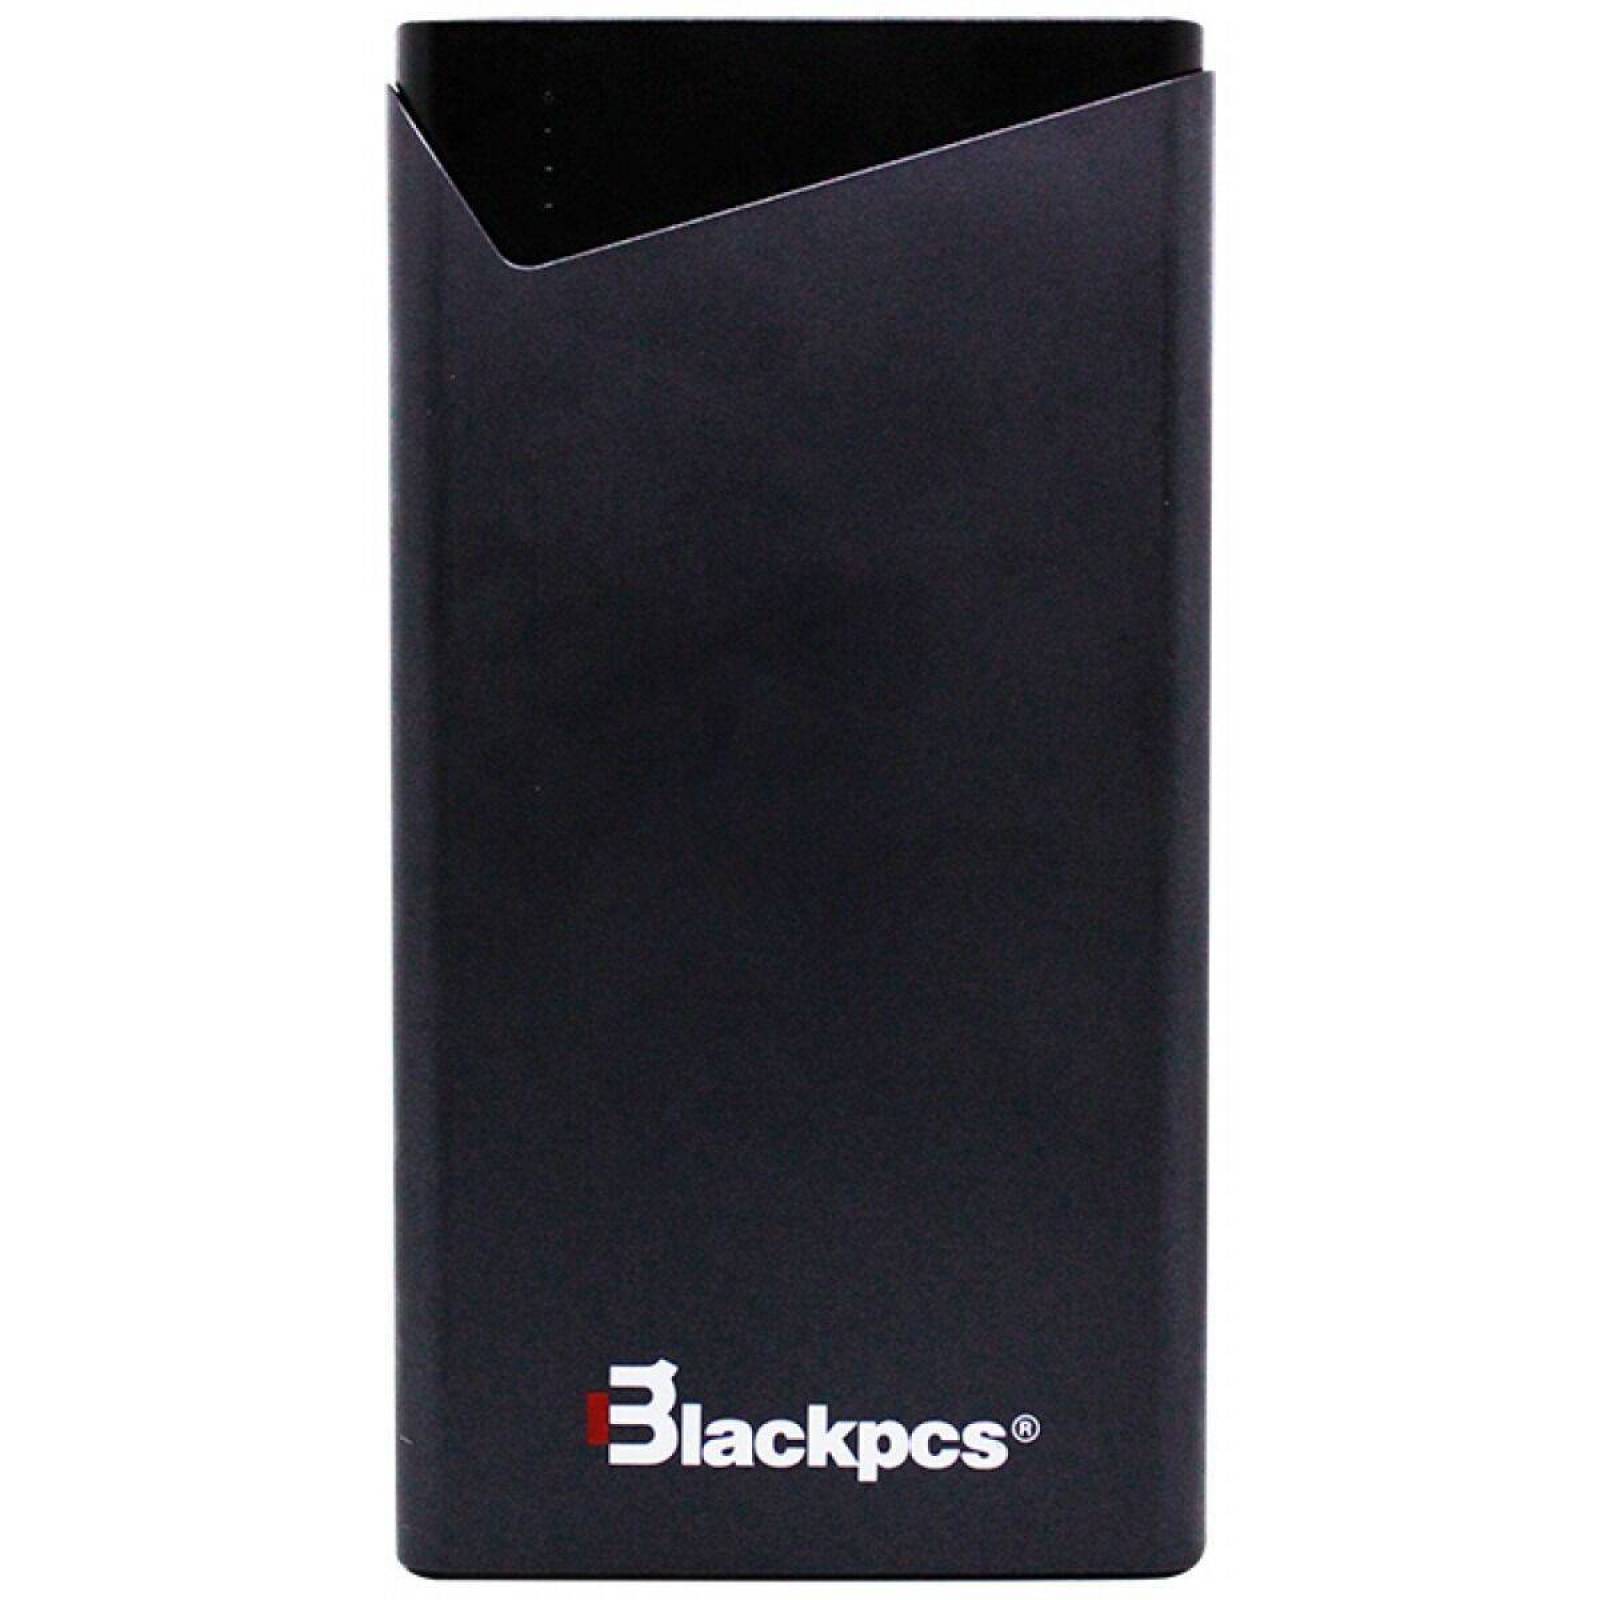 CARGADOR PORTATIL BLACKPCS EXECUTIVE NEGRO, 12000mAh, 2 PUERTOS USB (POWER BANK)